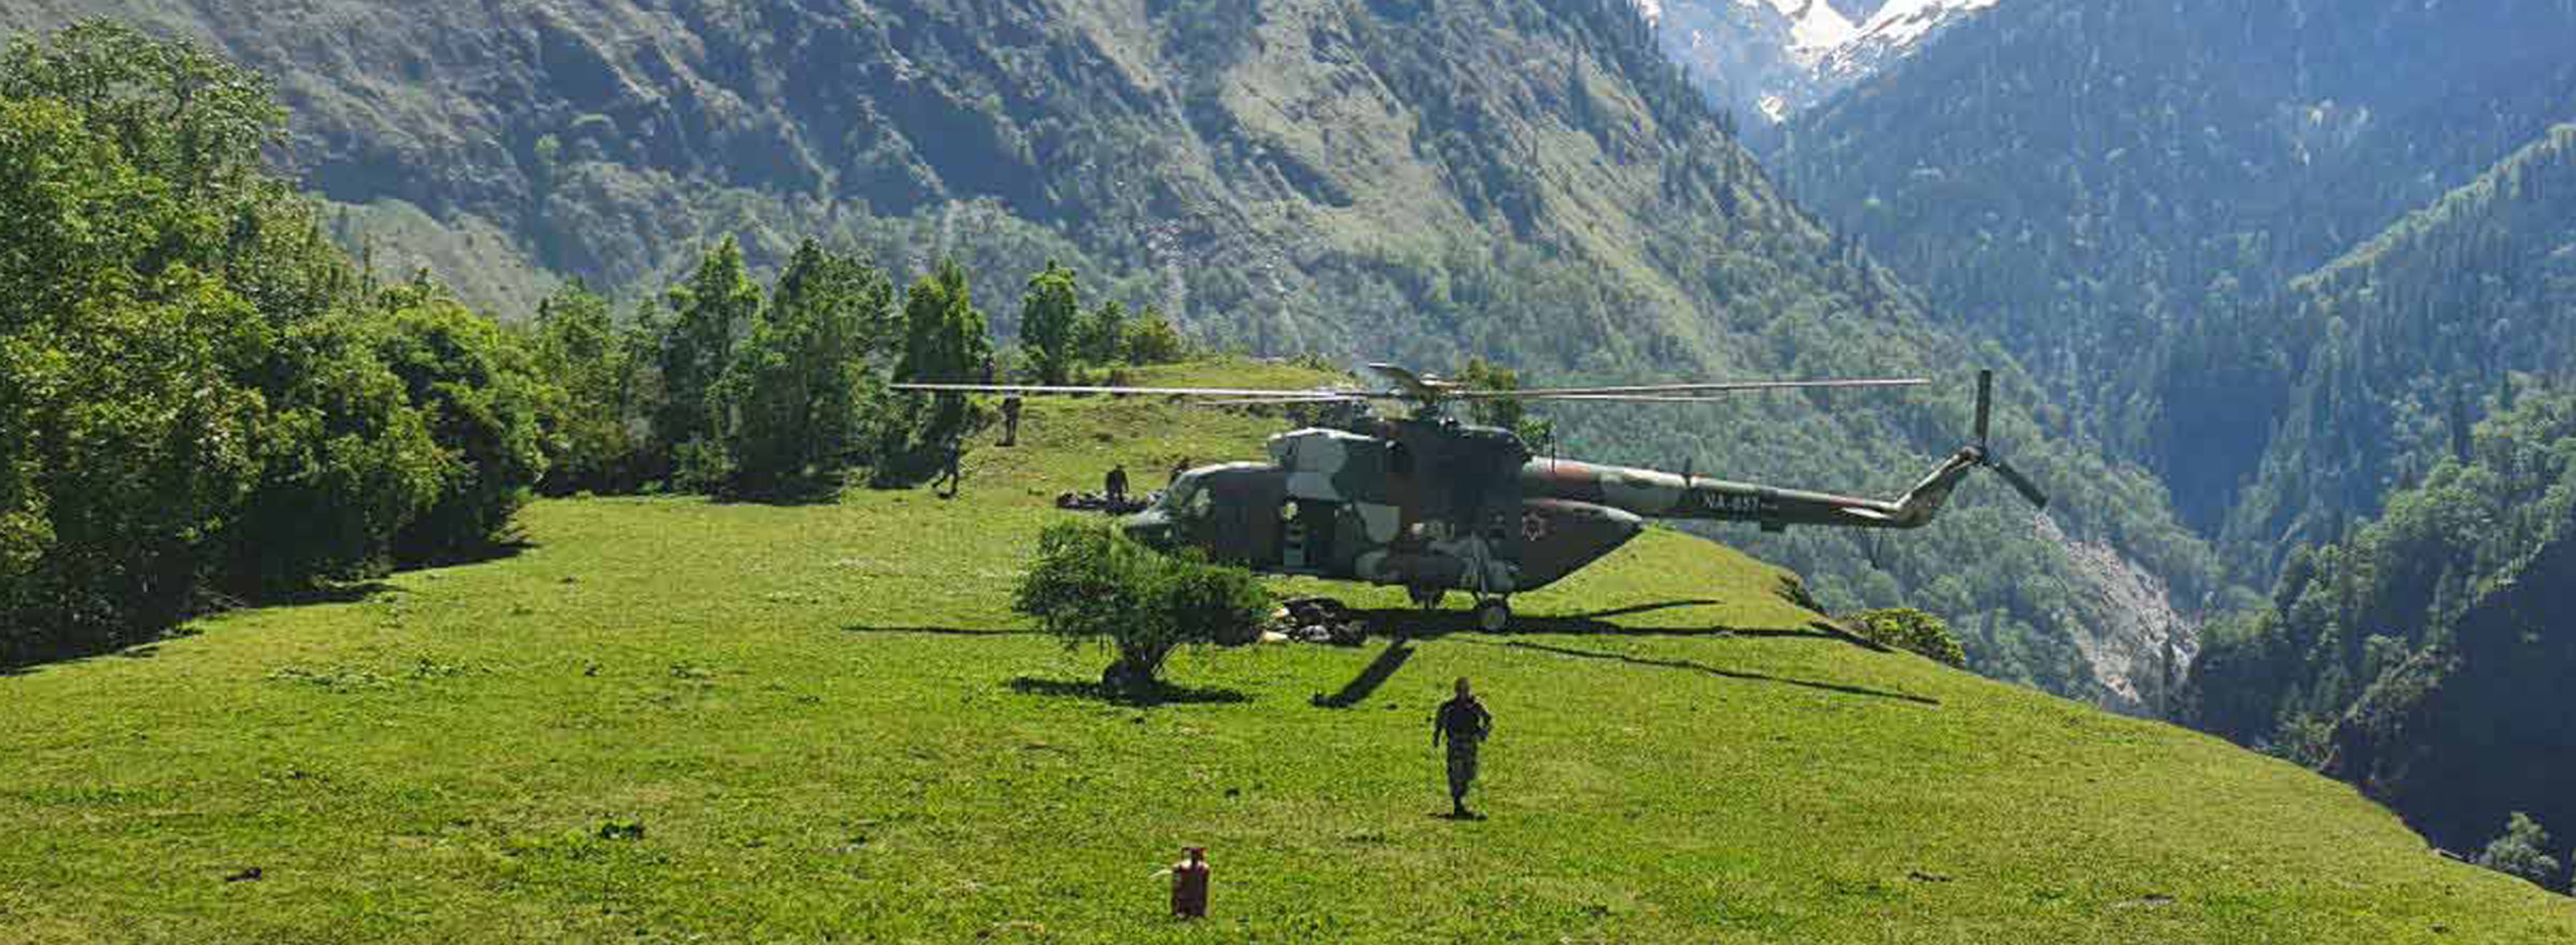 बाटो निर्माणका लागि फौज तैनाथ गर्दै नेपाली सेनाको हेलिकप्टर